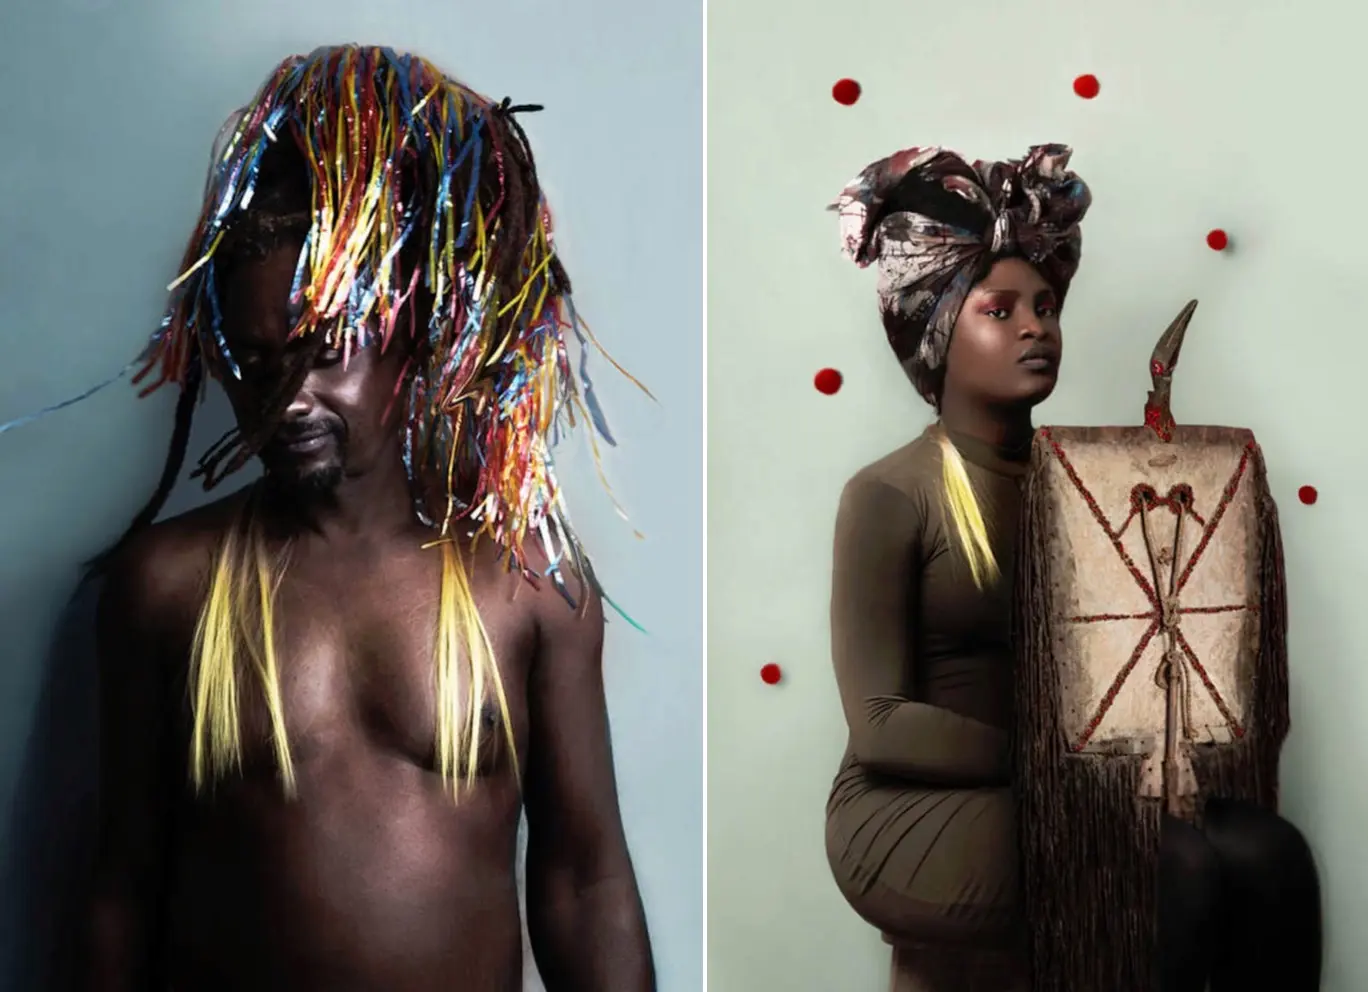 La beauté des danseurs spirituels du Burkina Faso sublimée dans les portraits d’Alice de Krujis